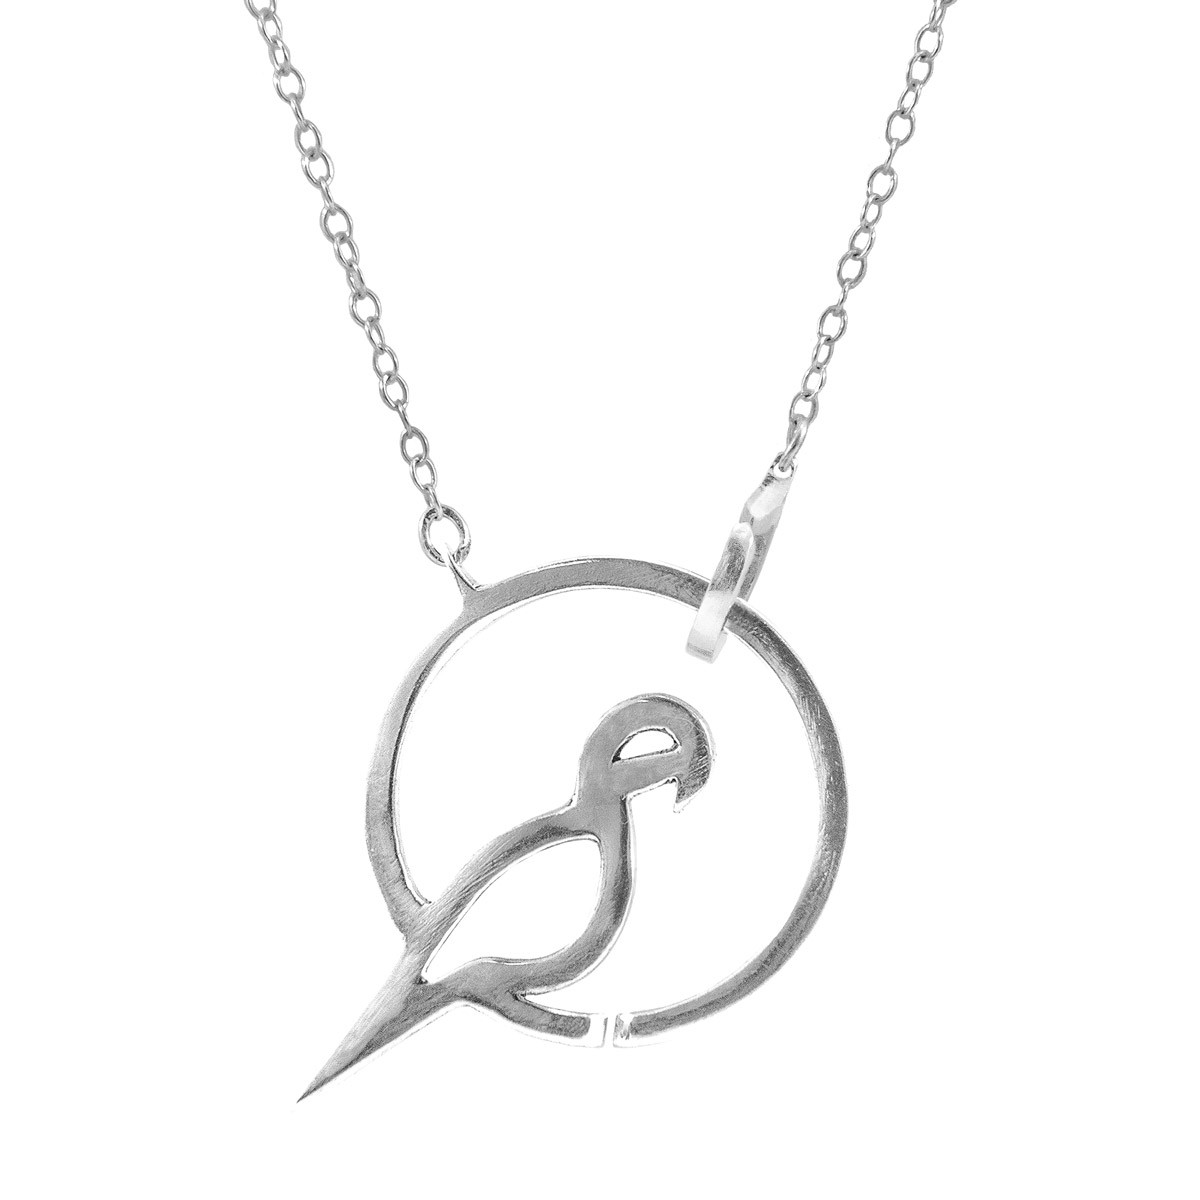 Perched Parrot Link Paradise Silver Necklace Pendant